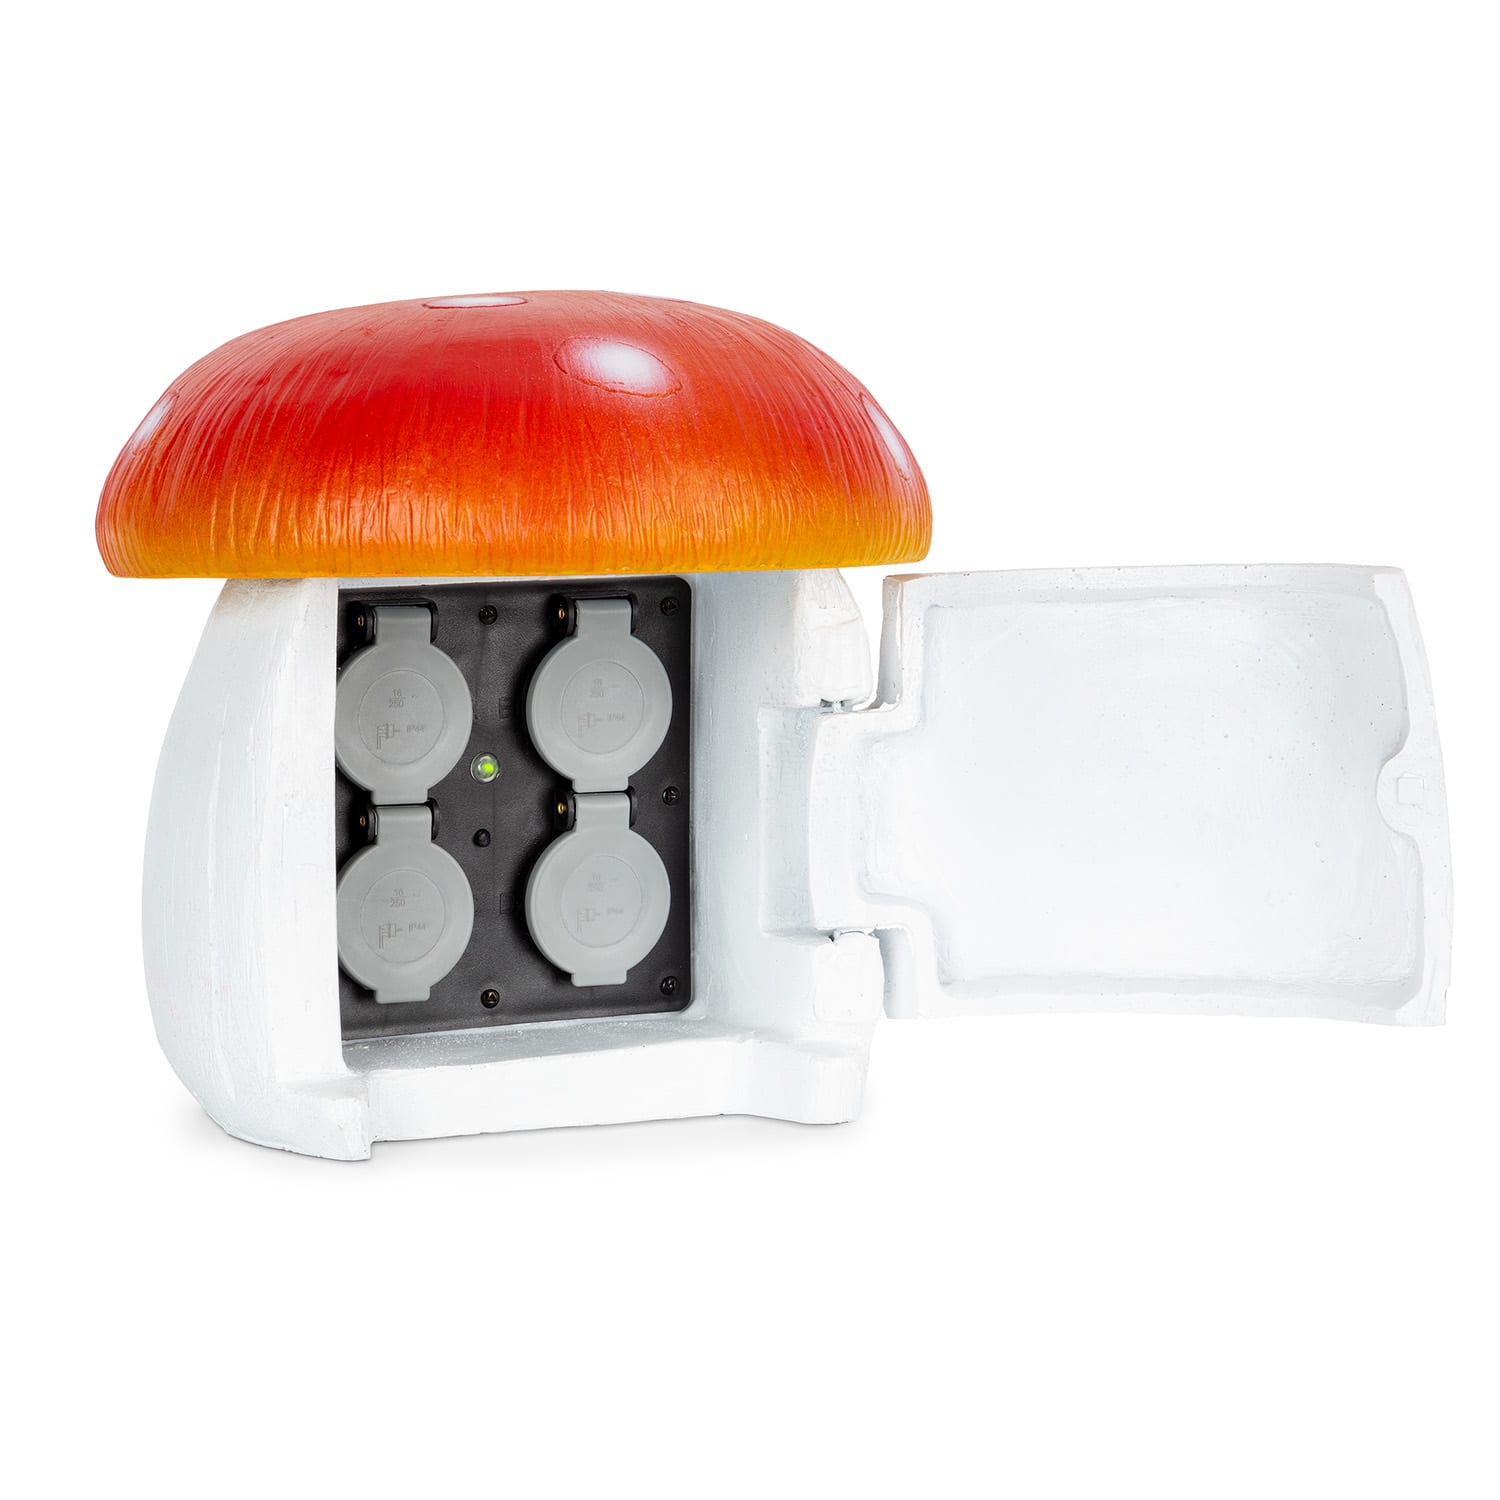 E-shop Blumfeldt Power Mushroom Smart, záhradná zásuvka, WiFi ovládanie, 3680 wattov, IP44